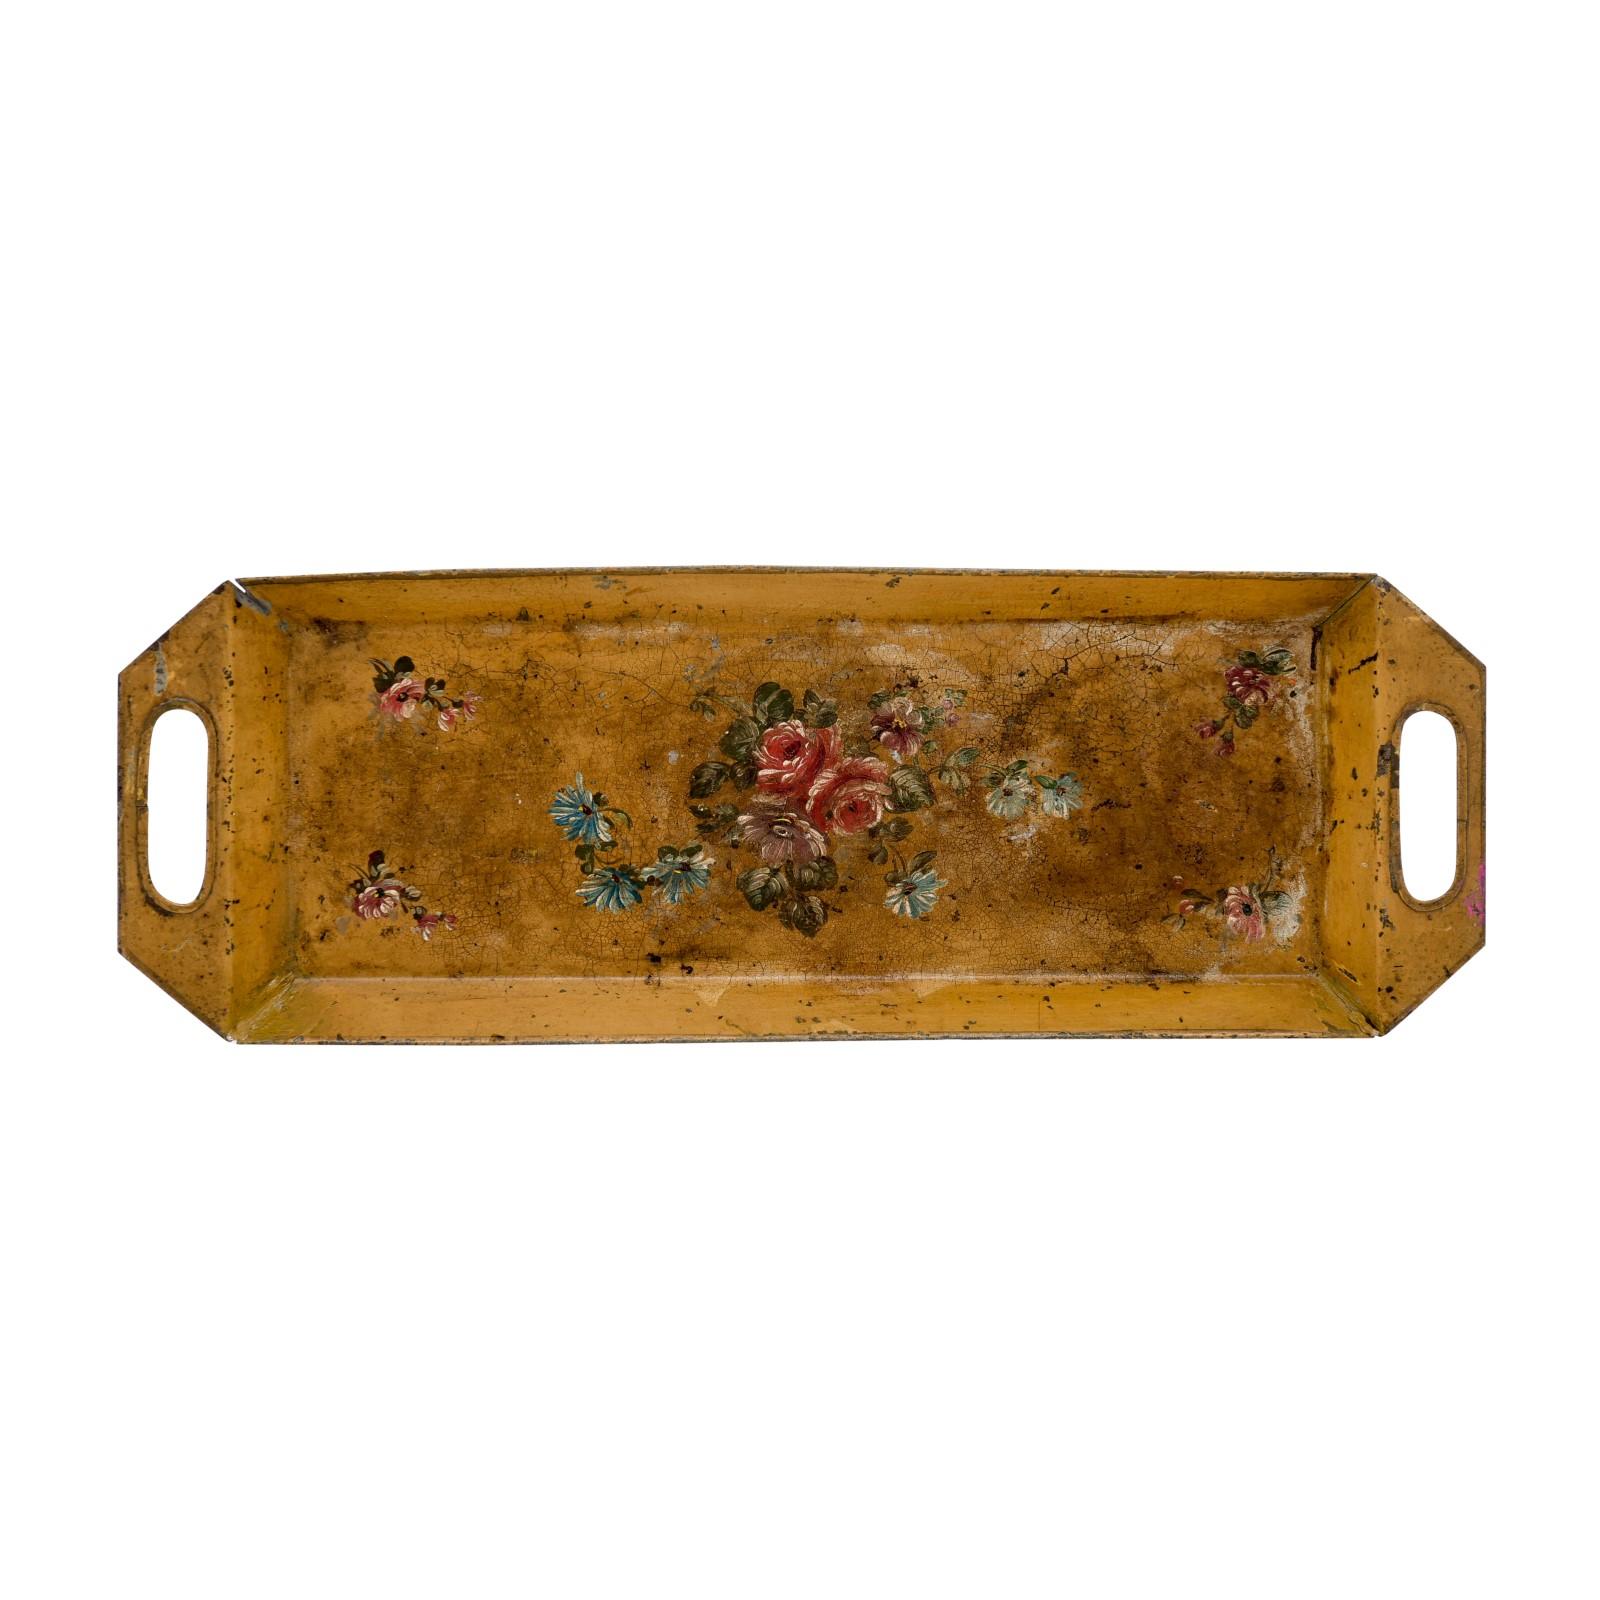 Französisches Tôle-Tablett aus dem 19. Jahrhundert, mit handgemaltem Blumendekor, abgeschrägten Kanten und schön verwitterter Patina. Dieses rechteckige Tôle-Tablett wurde im 19. Jahrhundert in Frankreich hergestellt und hat eine senfgelbe Farbe,